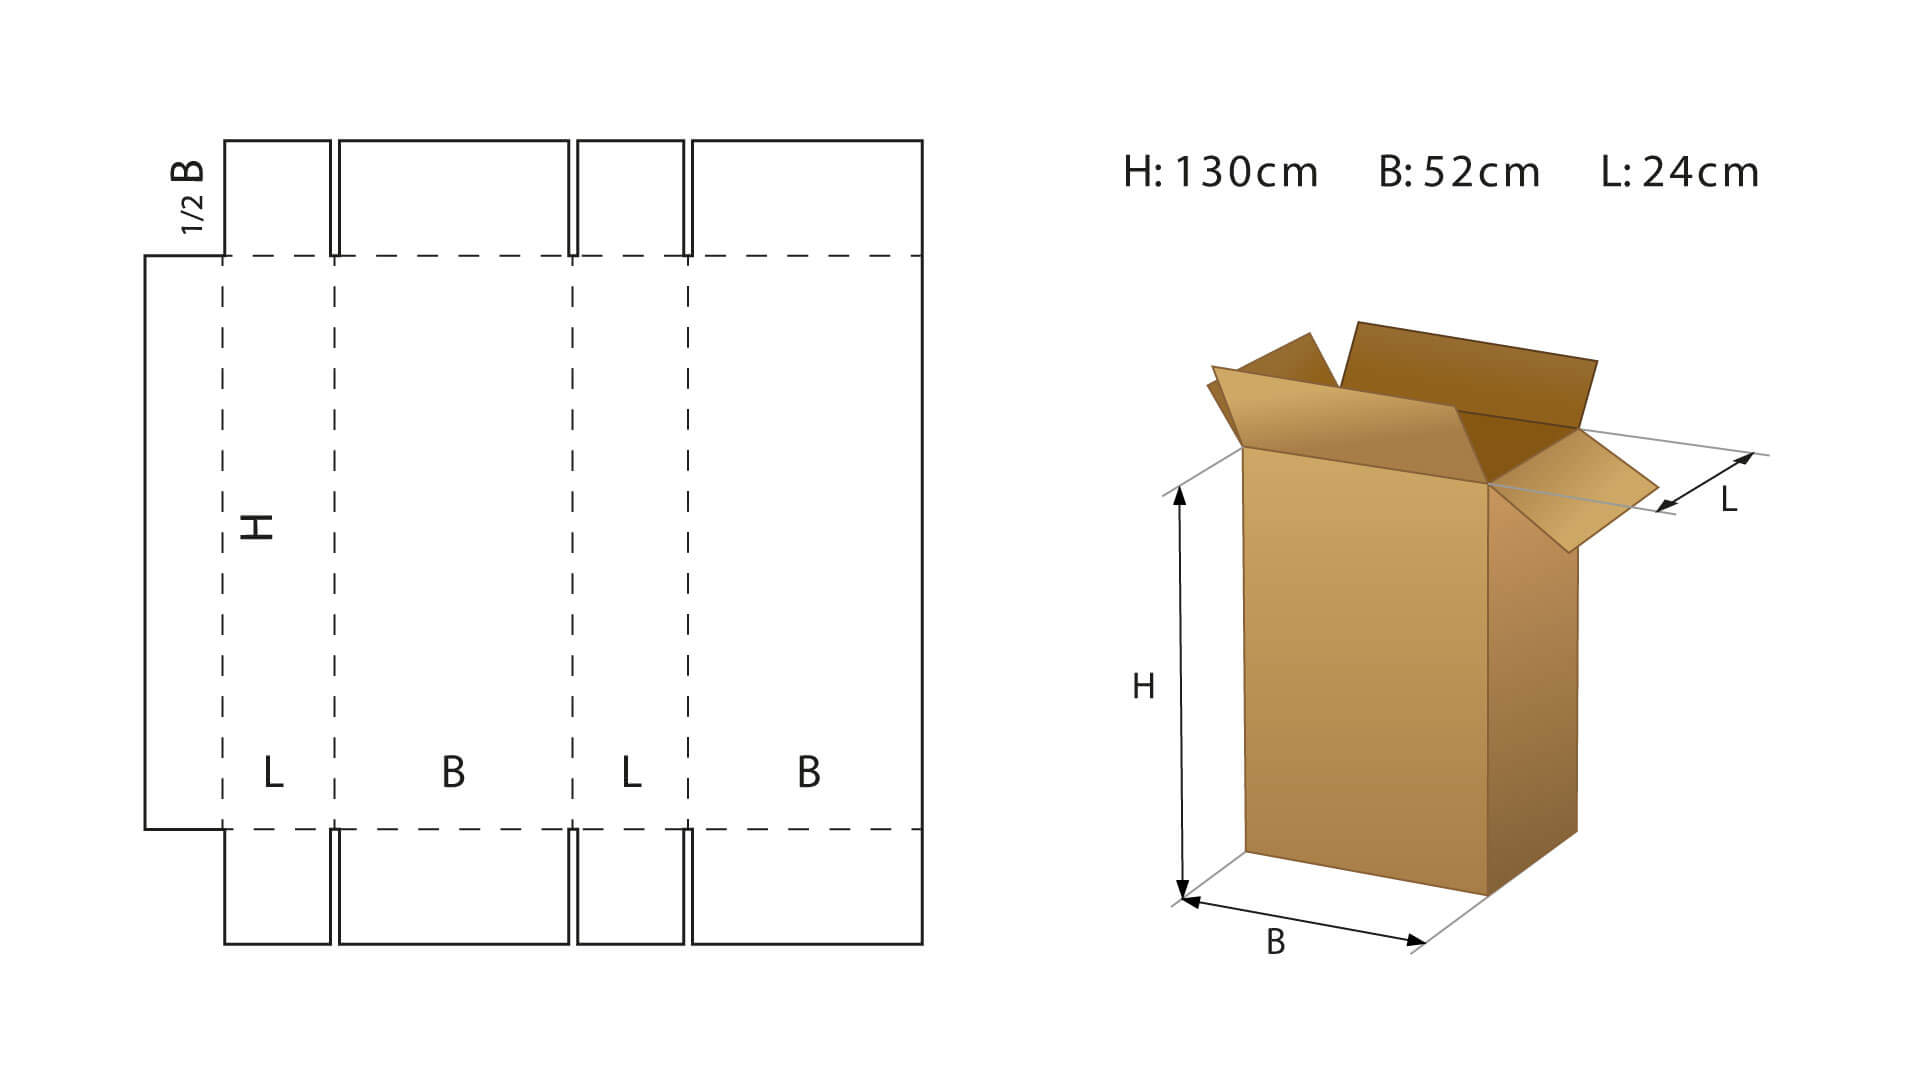 Cuál es el mejor tamaño de cajas para una mudanza?